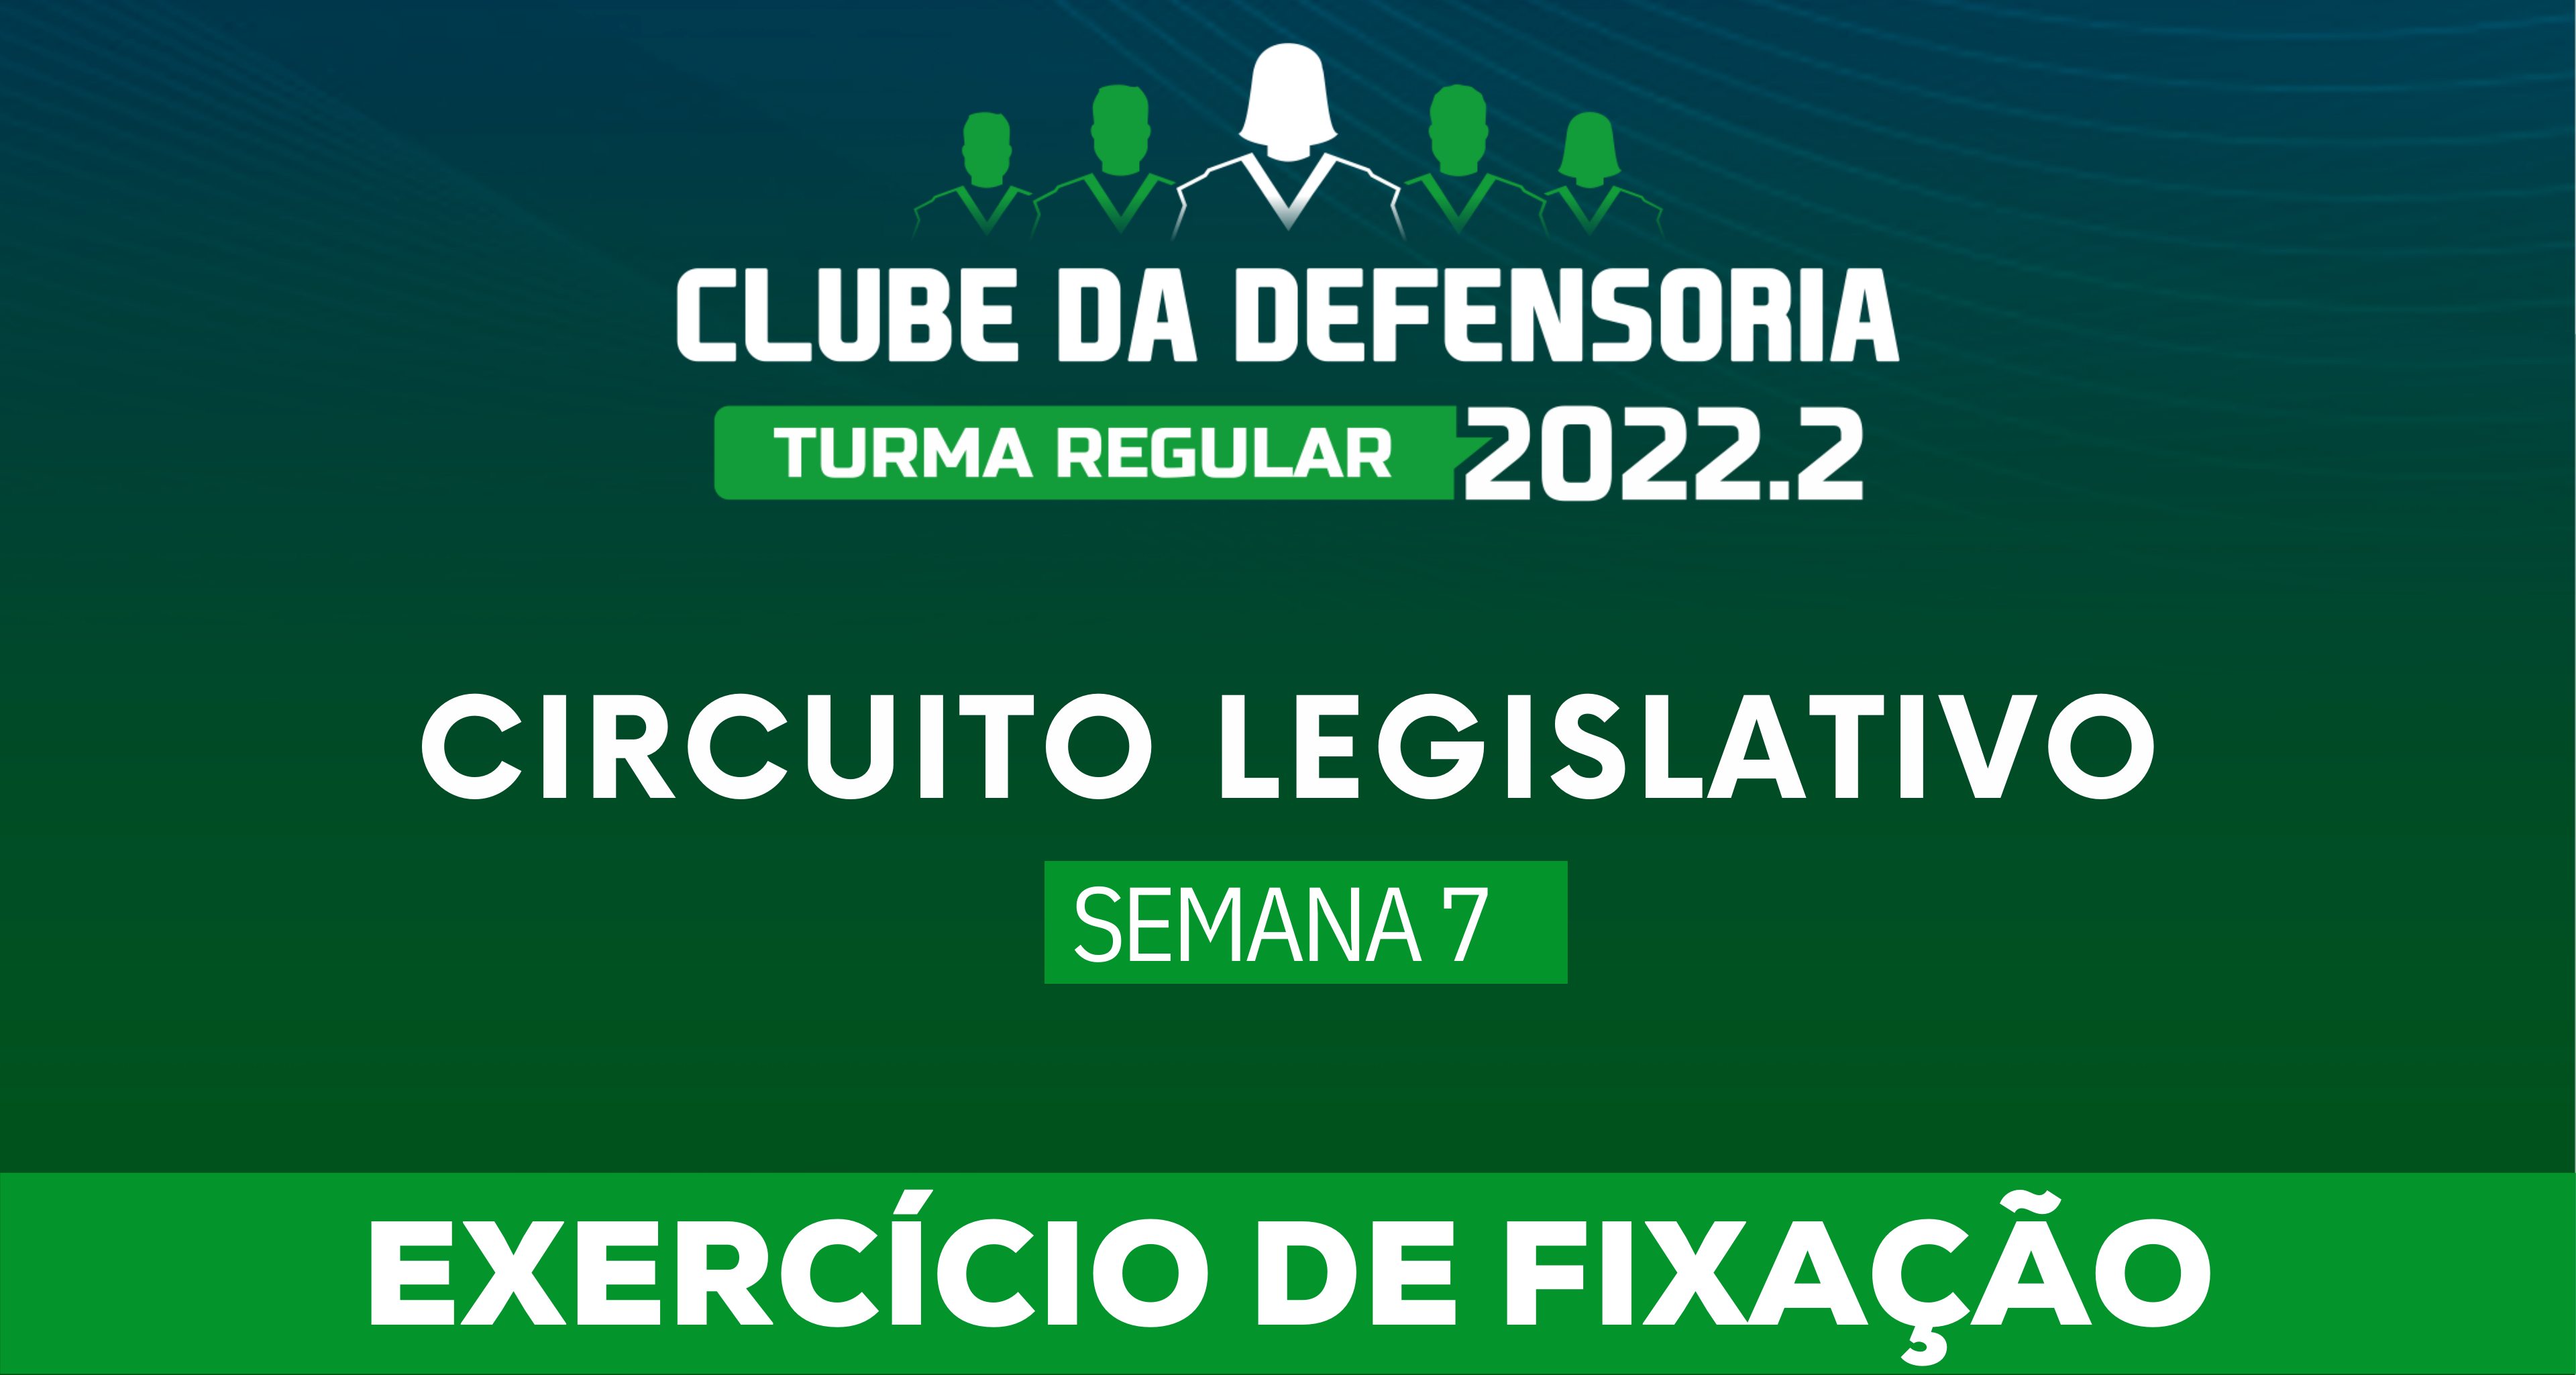 Circuito Legislativo 2022.2 (Clube da Defensoria - Semana 7)